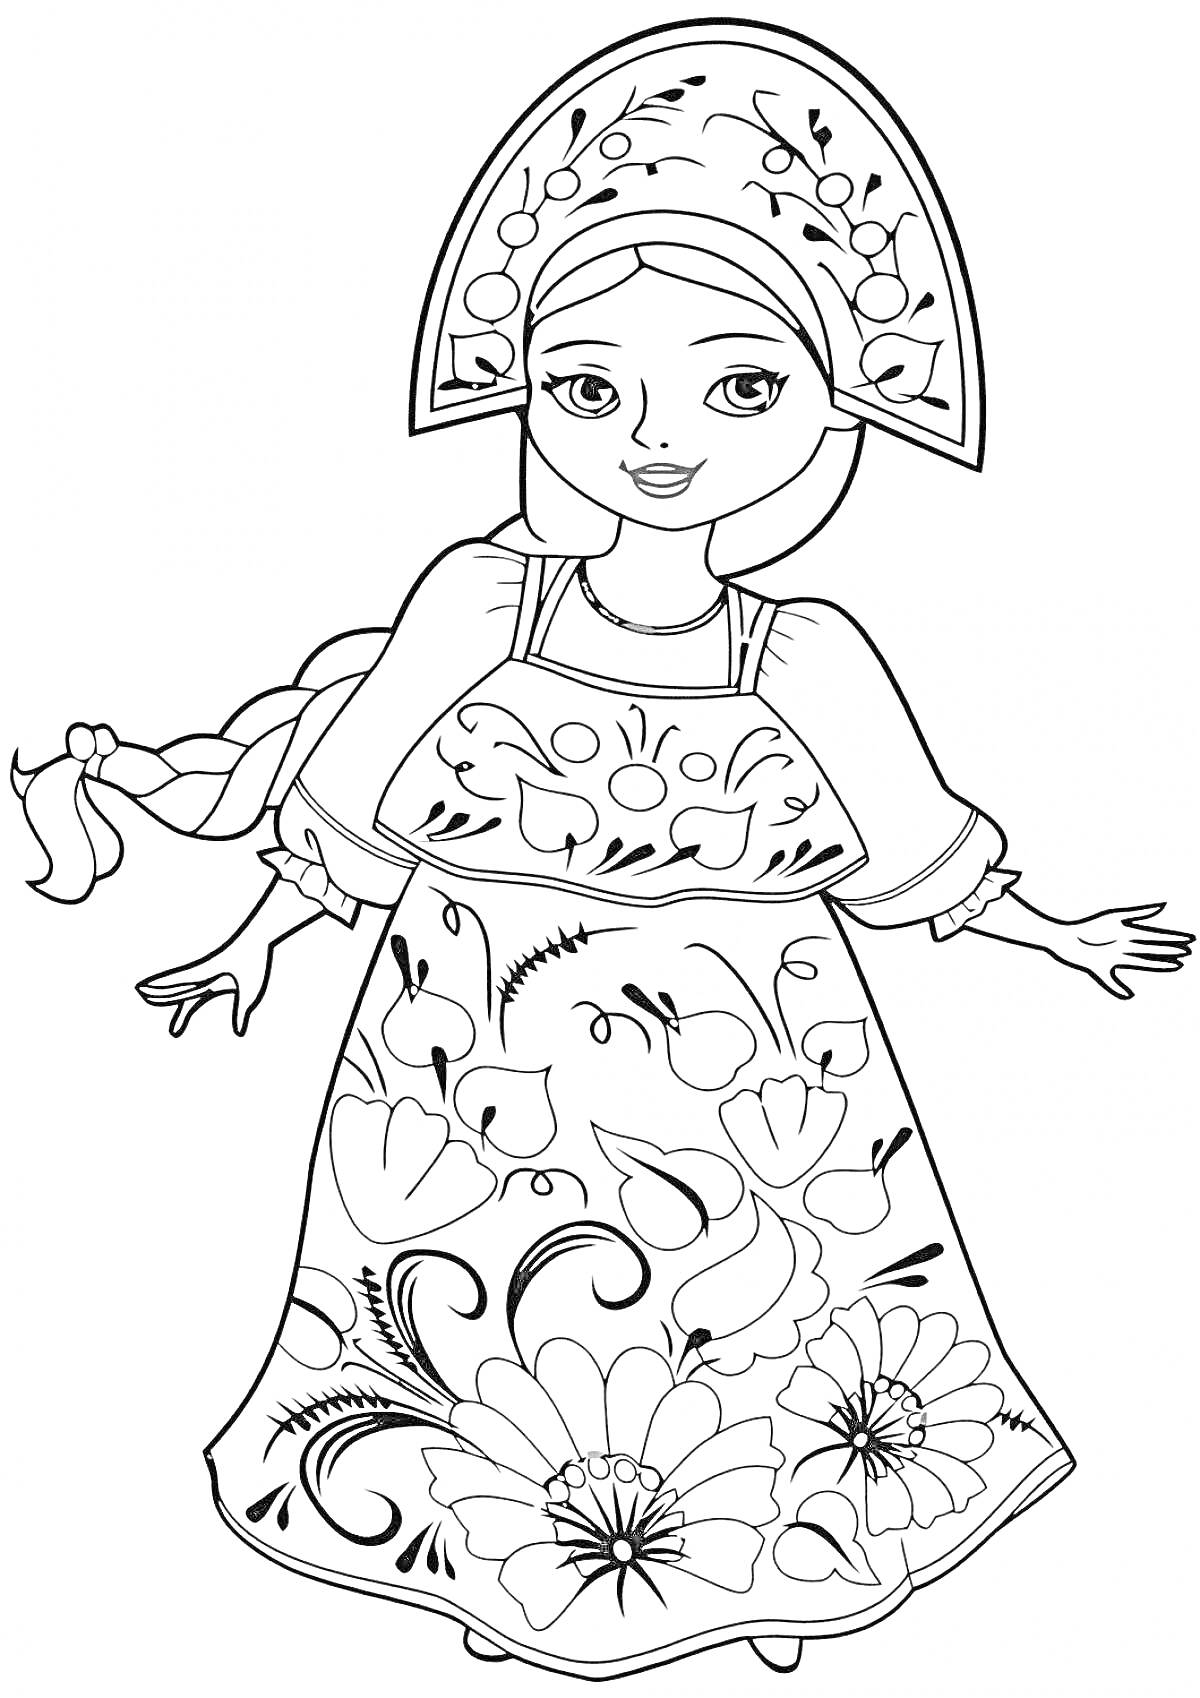 Раскраска Девочка-царевна в кокошнике и сарафане с цветочным орнаментом